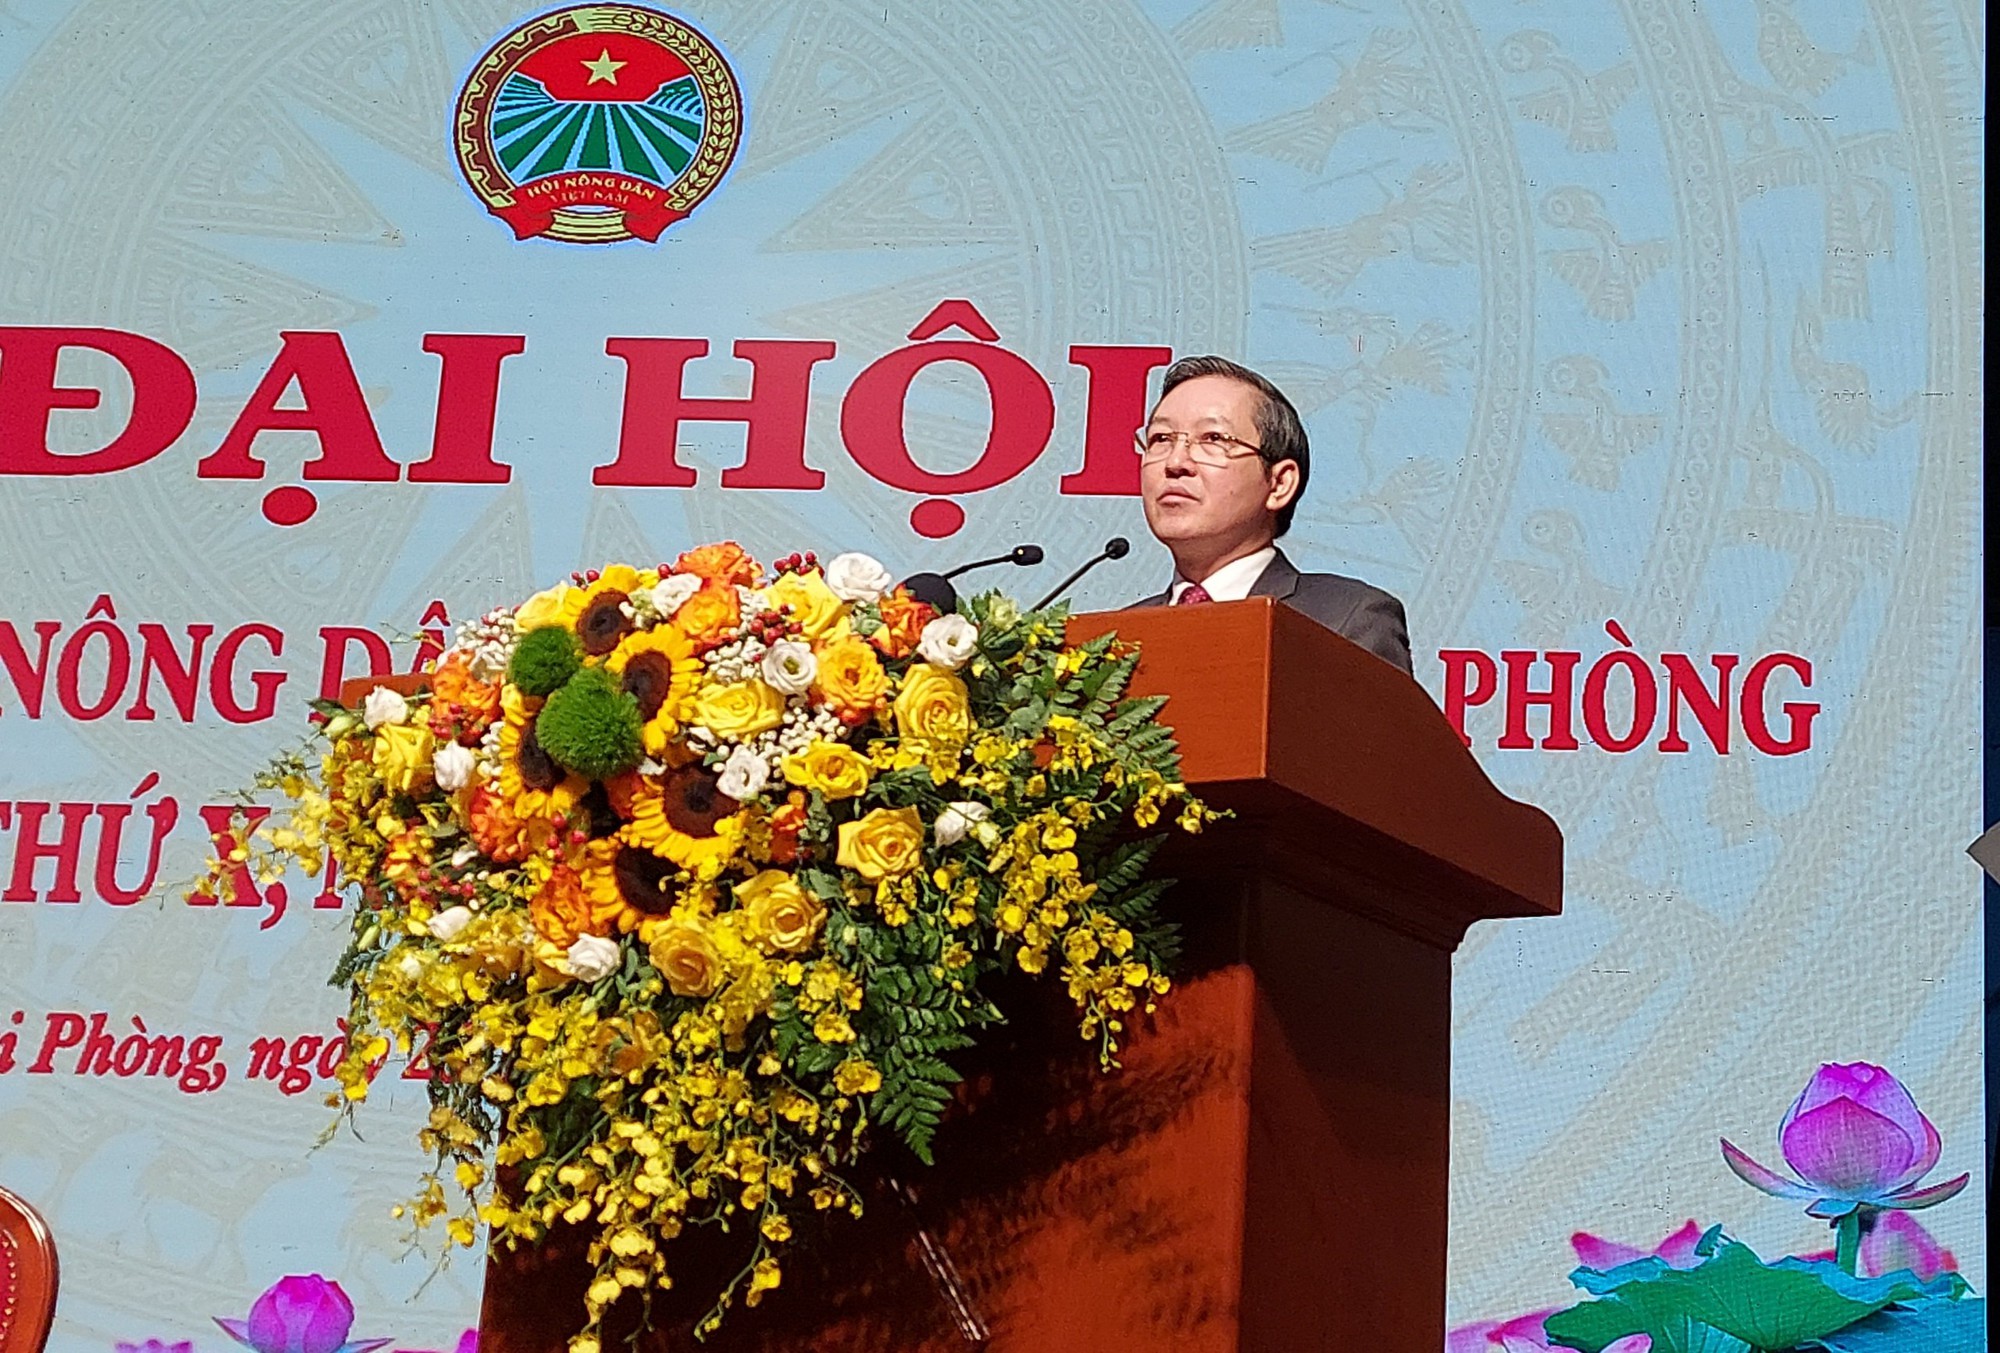 Hải Phòng: Chủ tịch Hội Nông dân Việt Nam Lương Quốc Đoàn dự, phát biểu tại Đại Hội Hội Nông dân thành phố khóa X - Ảnh 8.